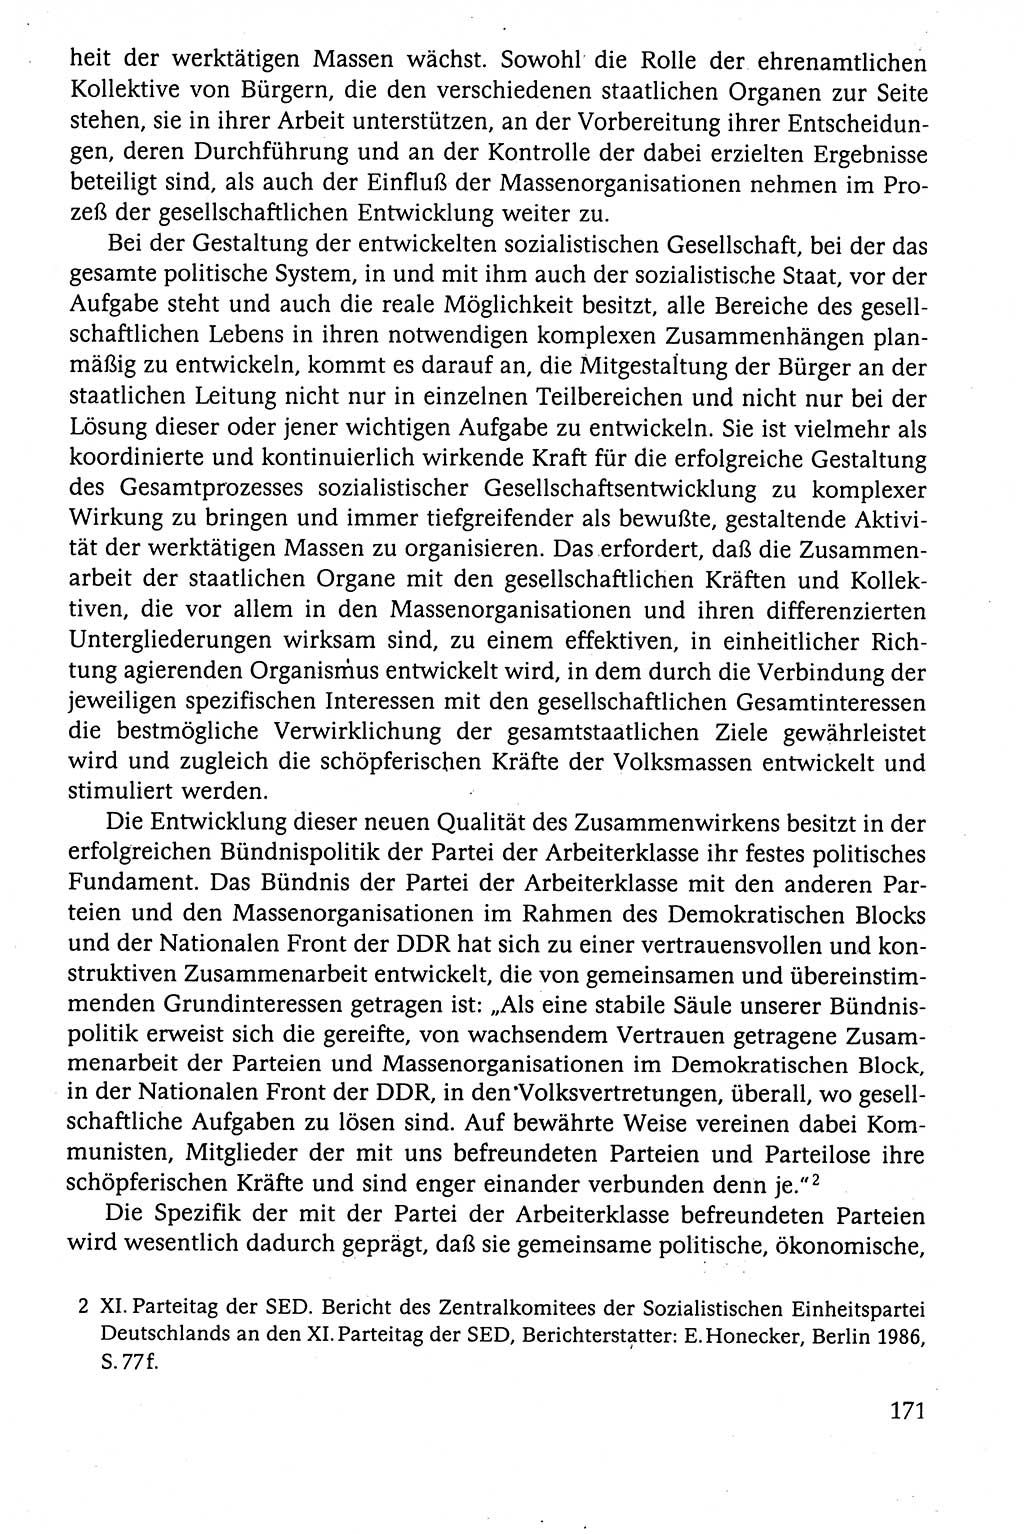 Der Staat im politischen System der DDR (Deutsche Demokratische Republik) 1986, Seite 171 (St. pol. Sys. DDR 1986, S. 171)